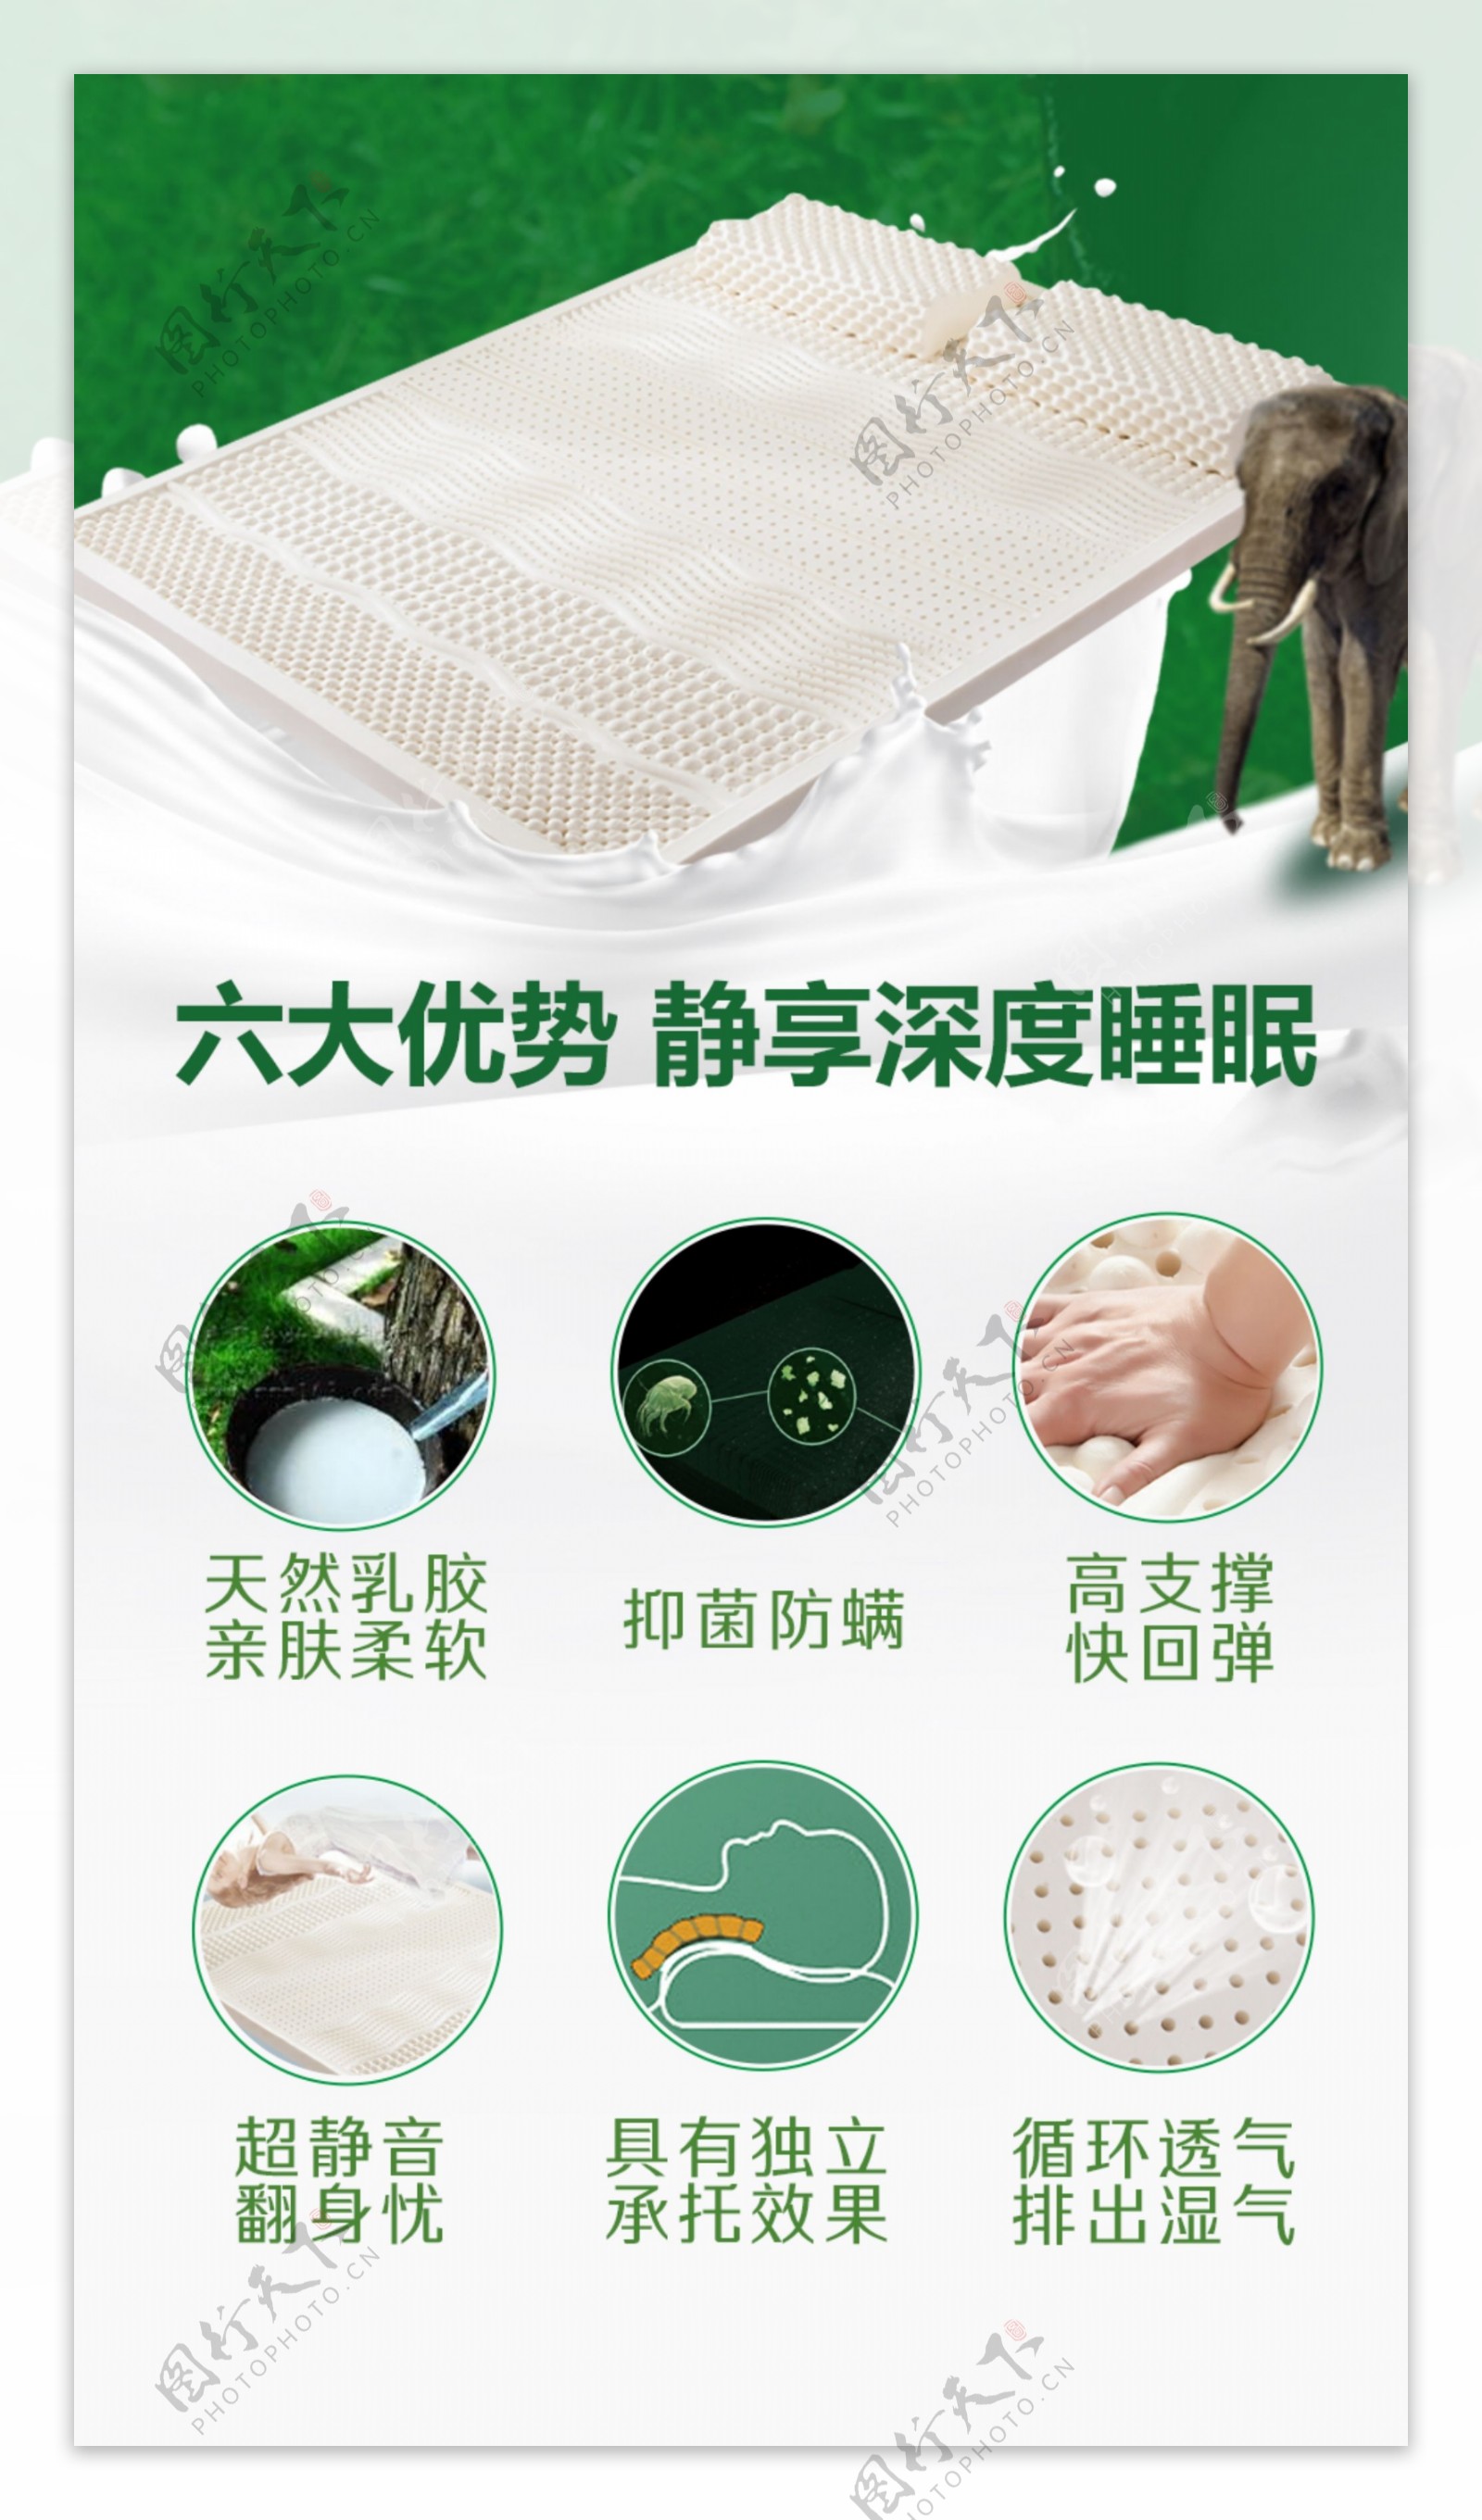 微信乳胶床垫6大优势宣传海报